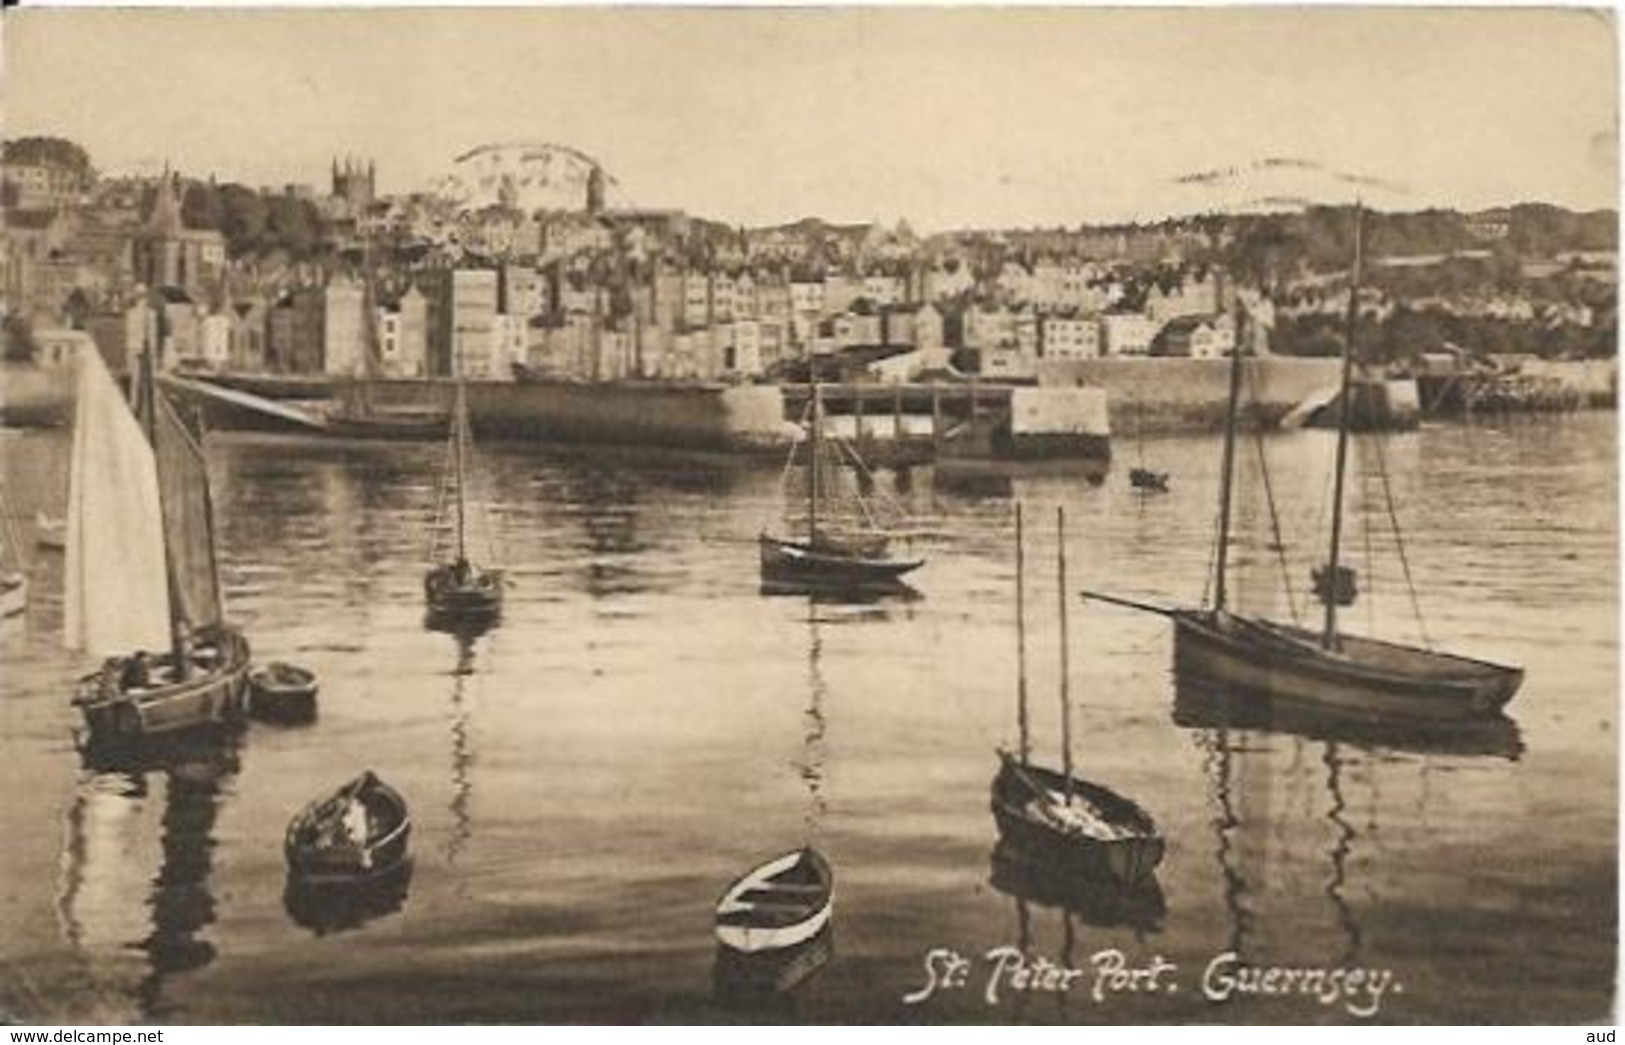 GUERNSEY, St Peter Port - Guernsey